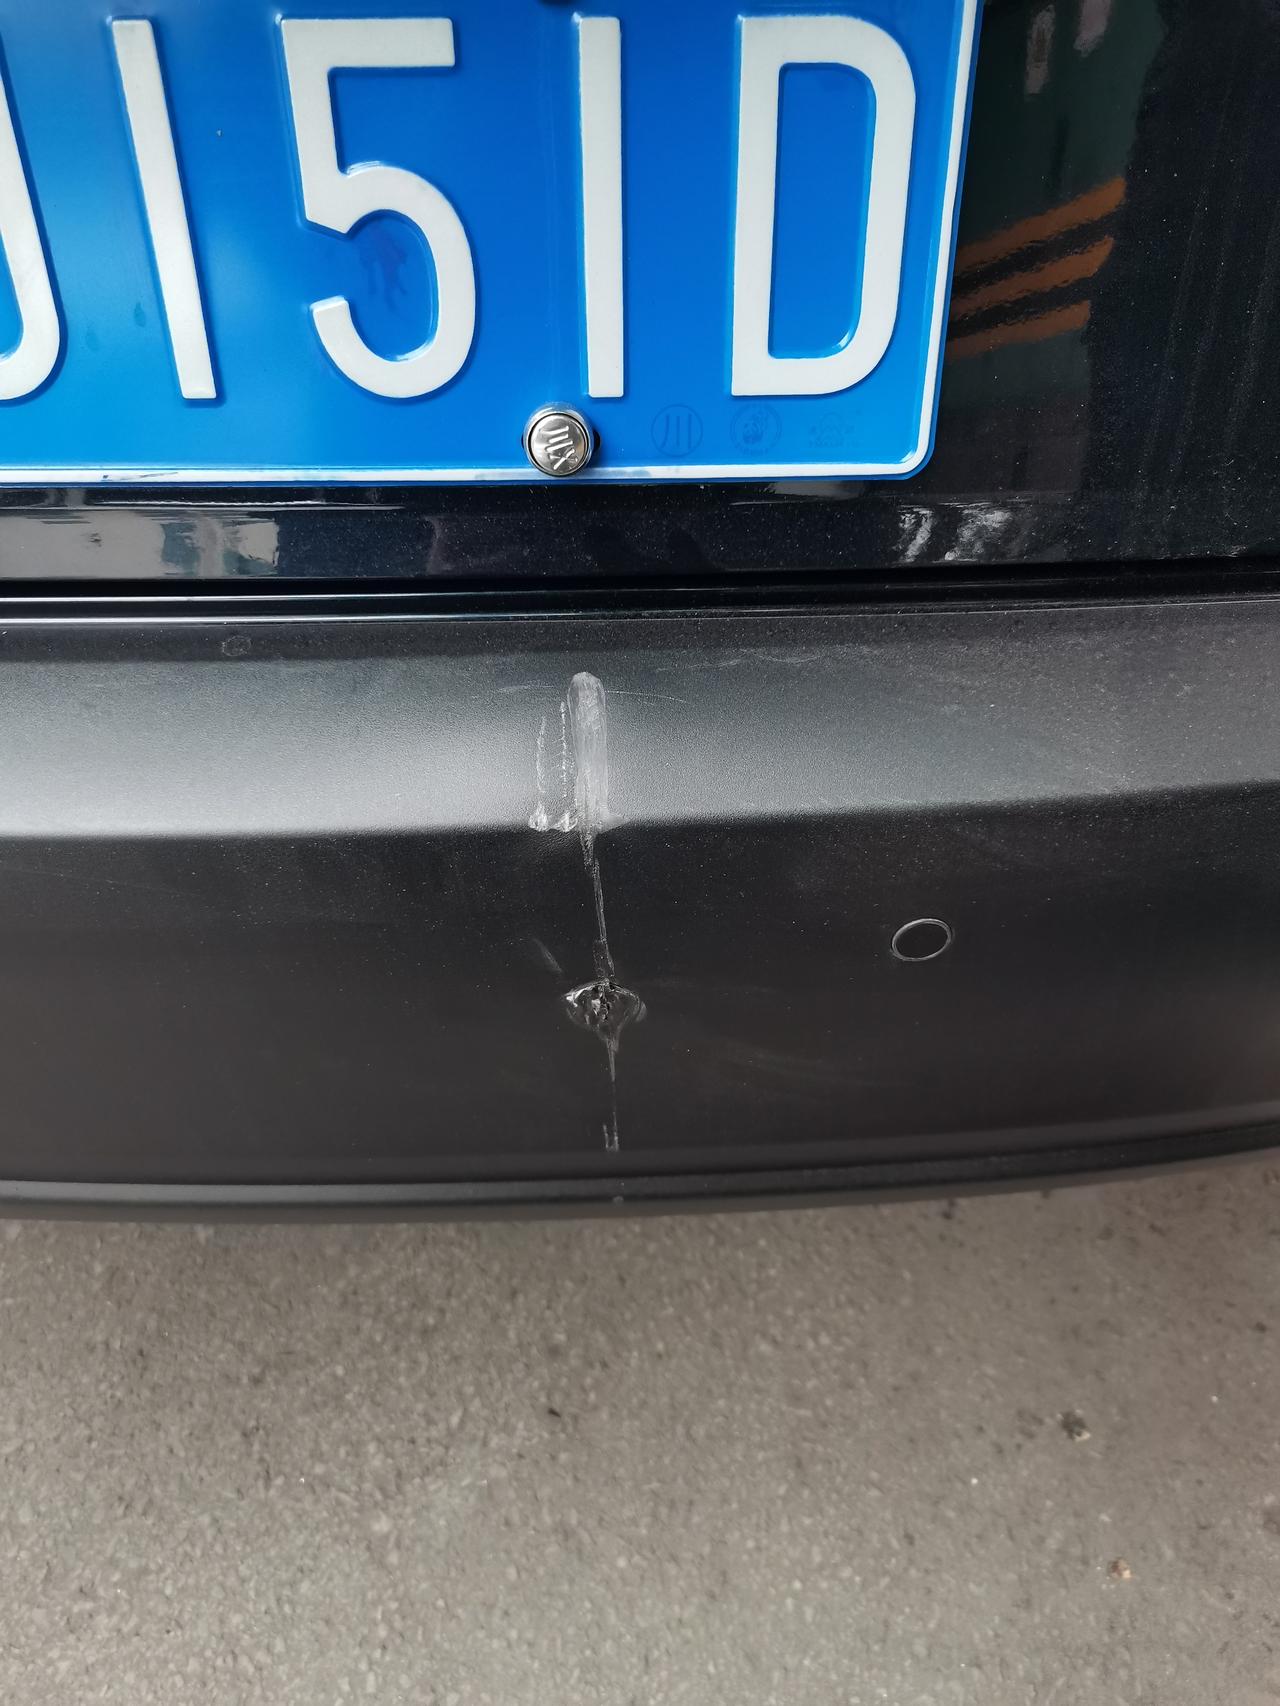 马自达CX-30 车友们问一下   这种塑料壳被撞了   店里能修复吗  换一个感觉太不划算了